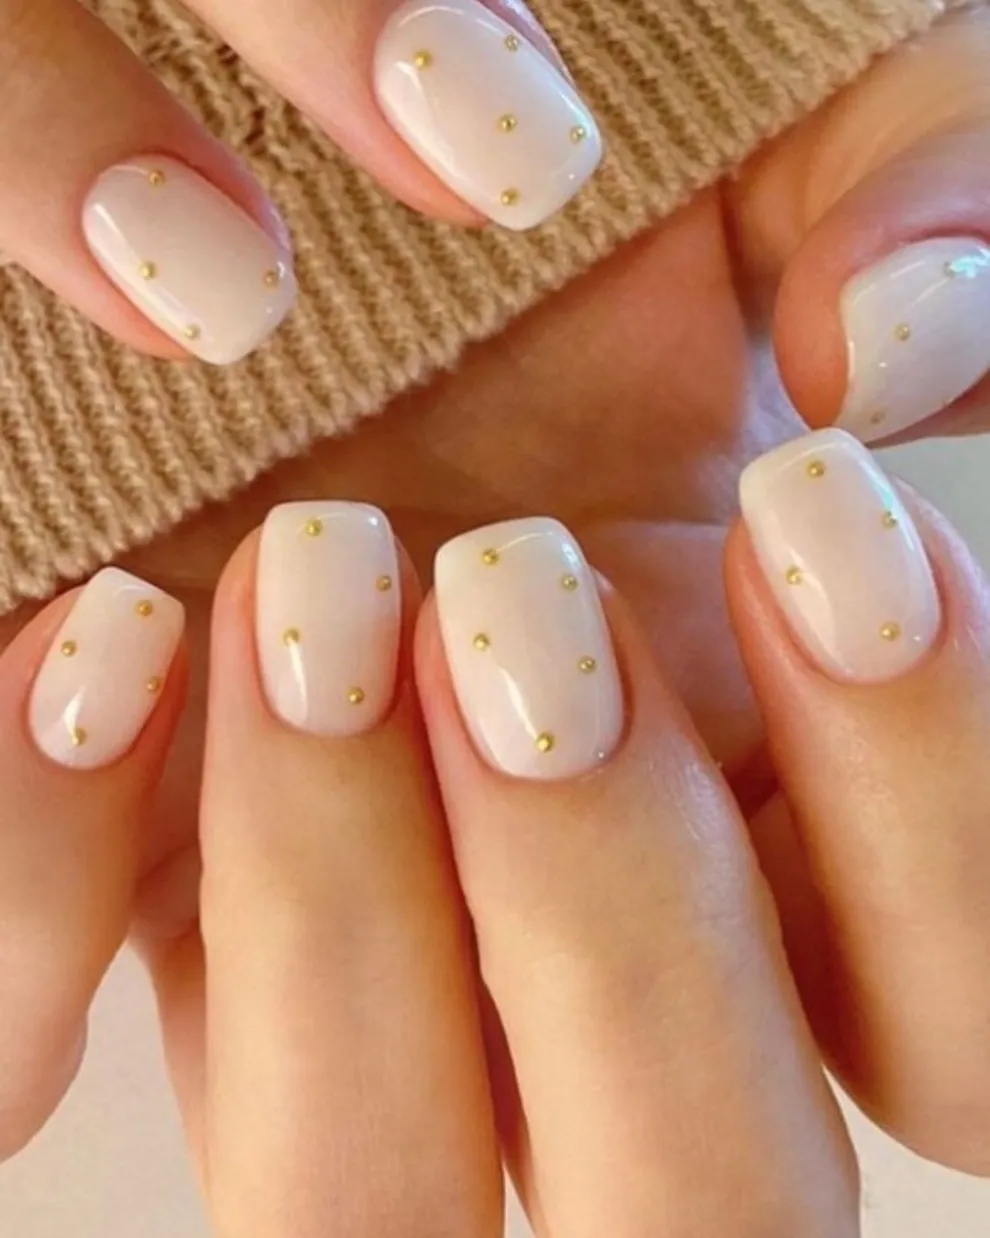 Combinando las milky nails con la tendencia de los dots, la clave está en el mix de colores.